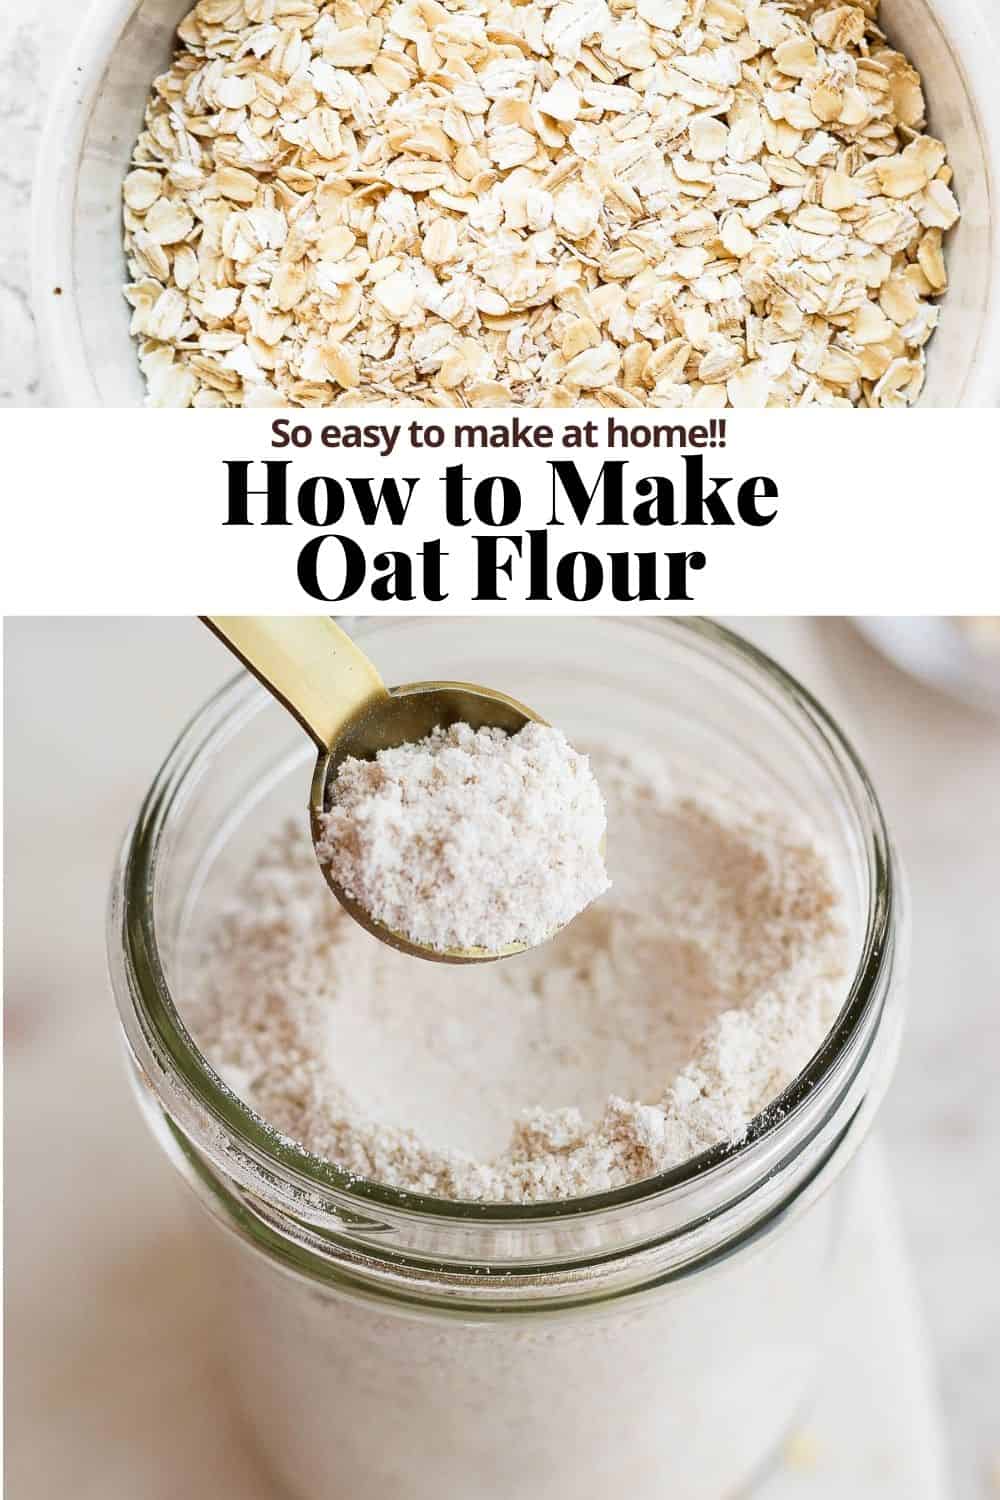 Pinterest image for oat flour.